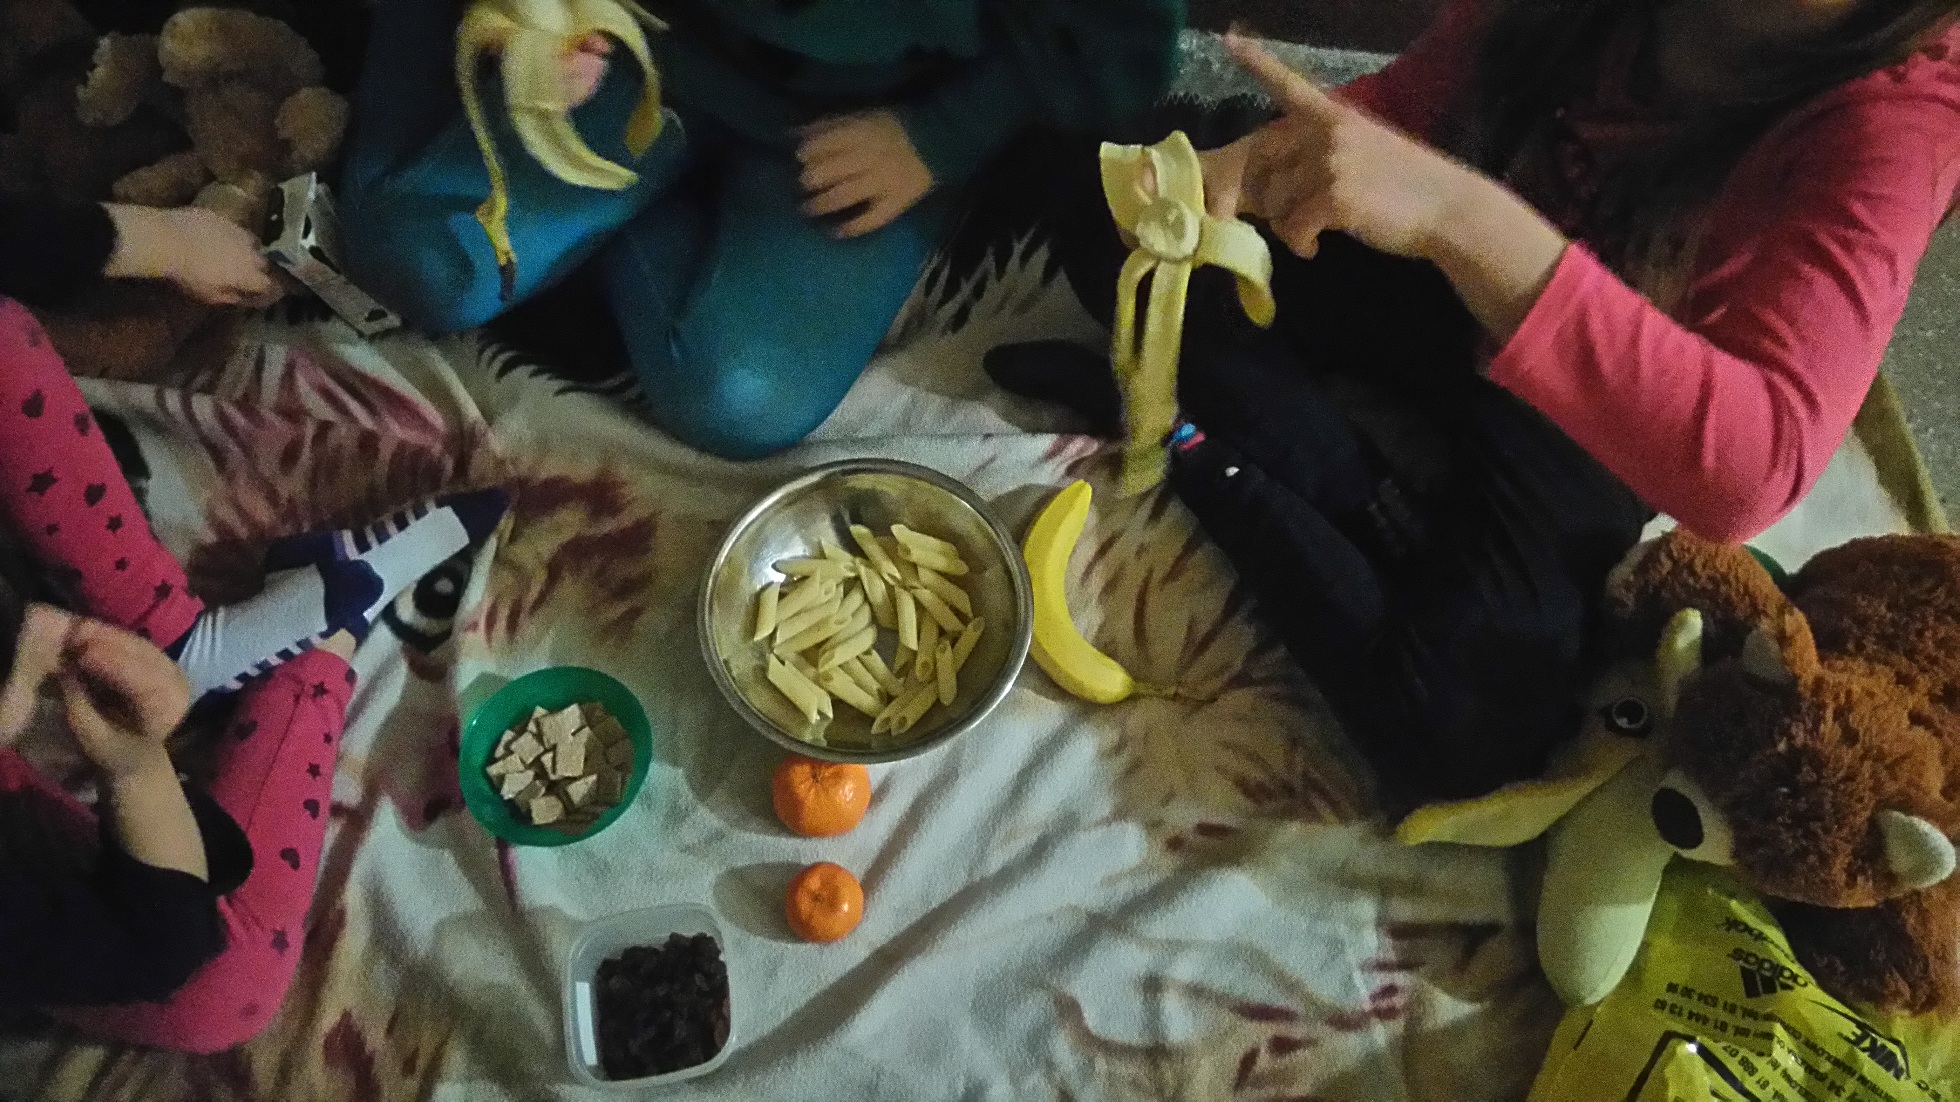 makaron, banany, mandarynki, płatki kukurydziane w zielonej misce leżą na piknikowym kocu, dzieci jedzące banany